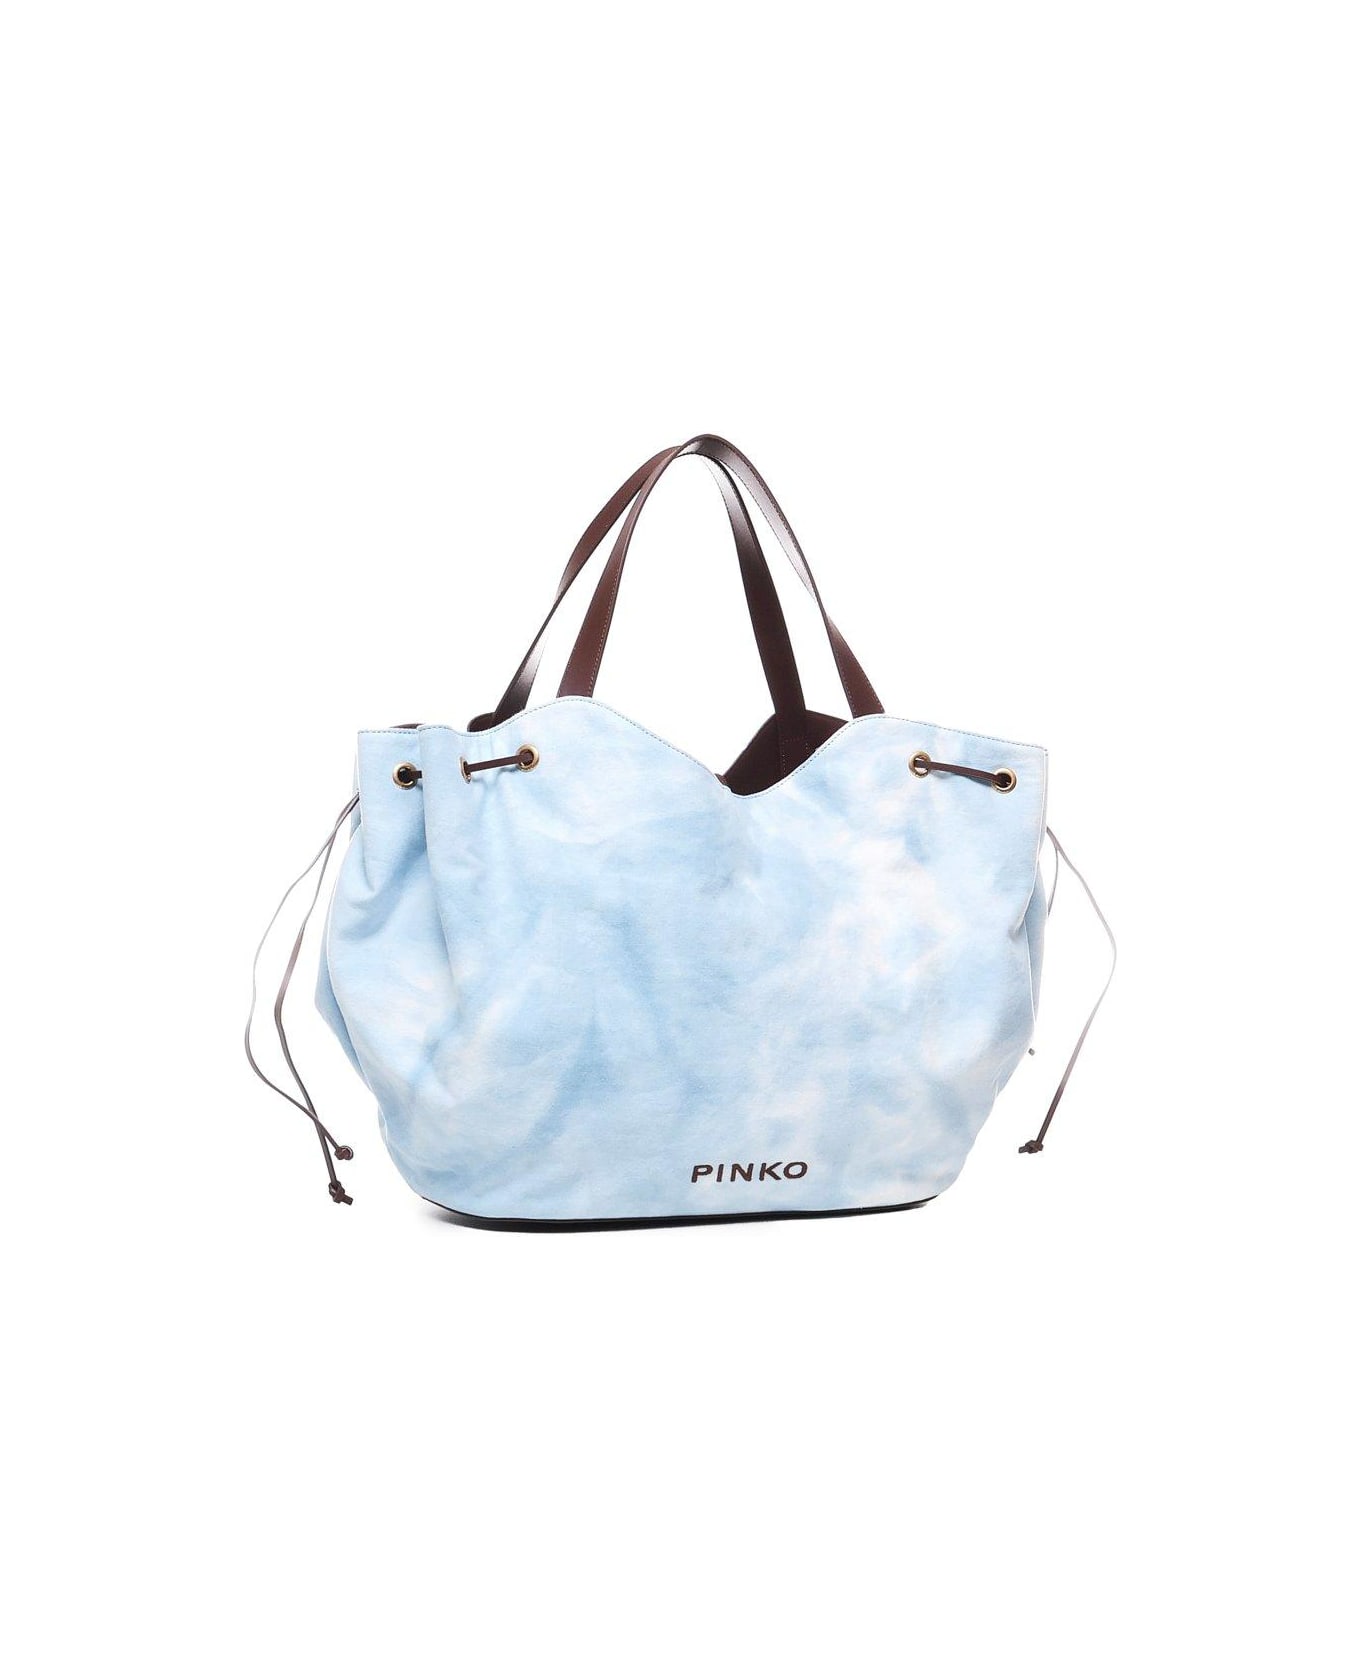 Pinko Logo Printed Drawstring Tote Bag - Cool blue トートバッグ